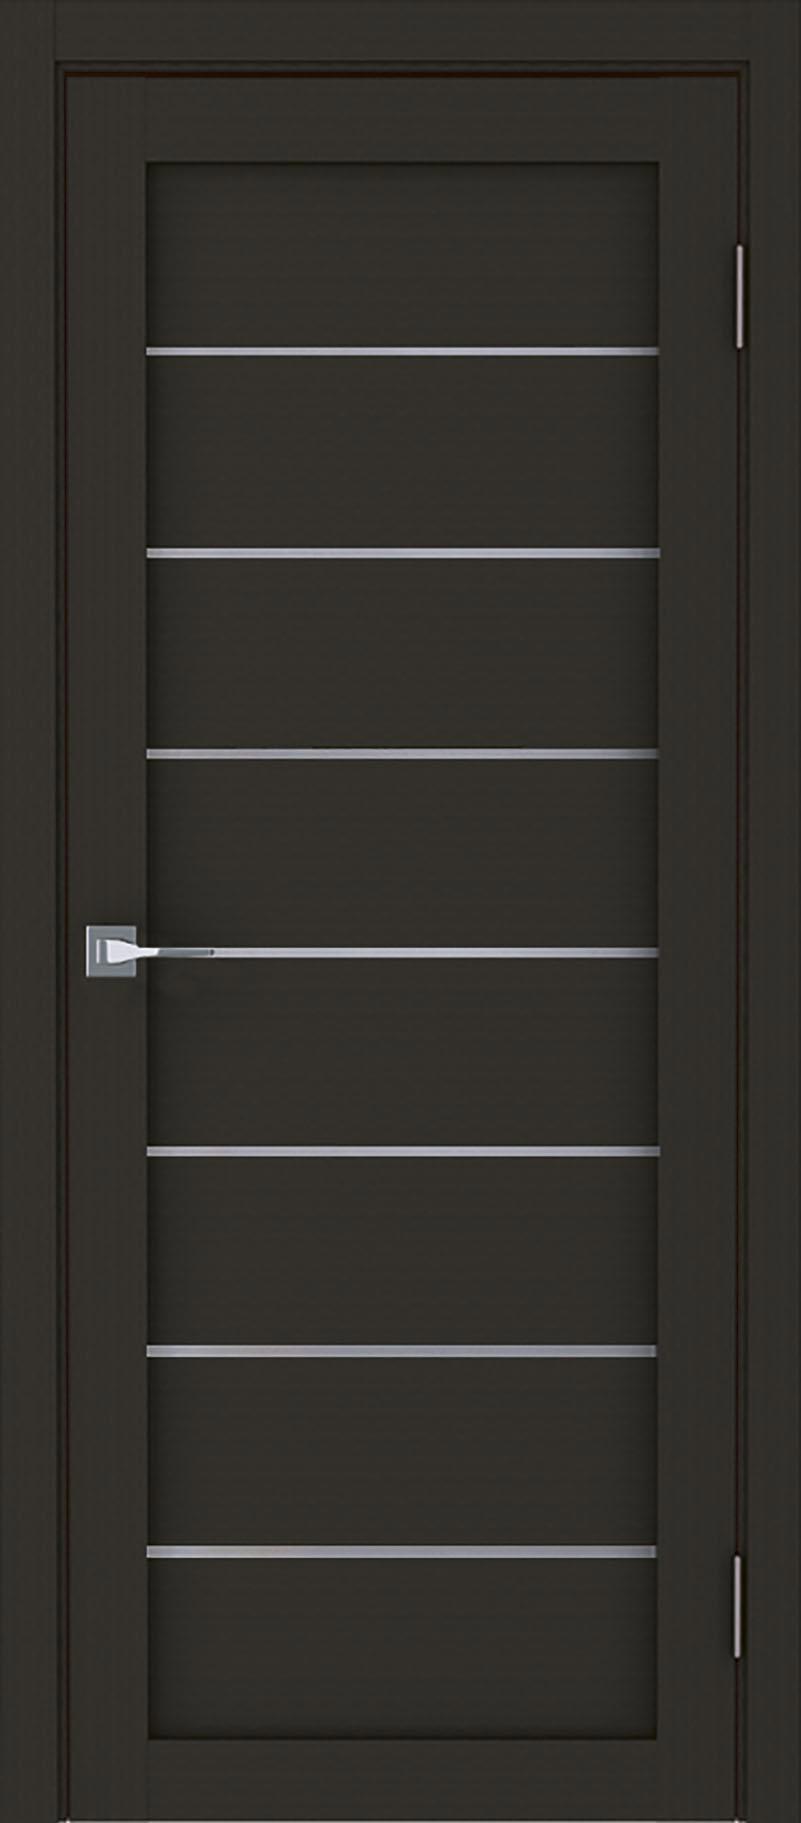 90903187 Межкомнатная дверь Модерн 10005 остеклённая без замка и петель в комплекте 200x90см каштан STLM-0420013 UBERTURE